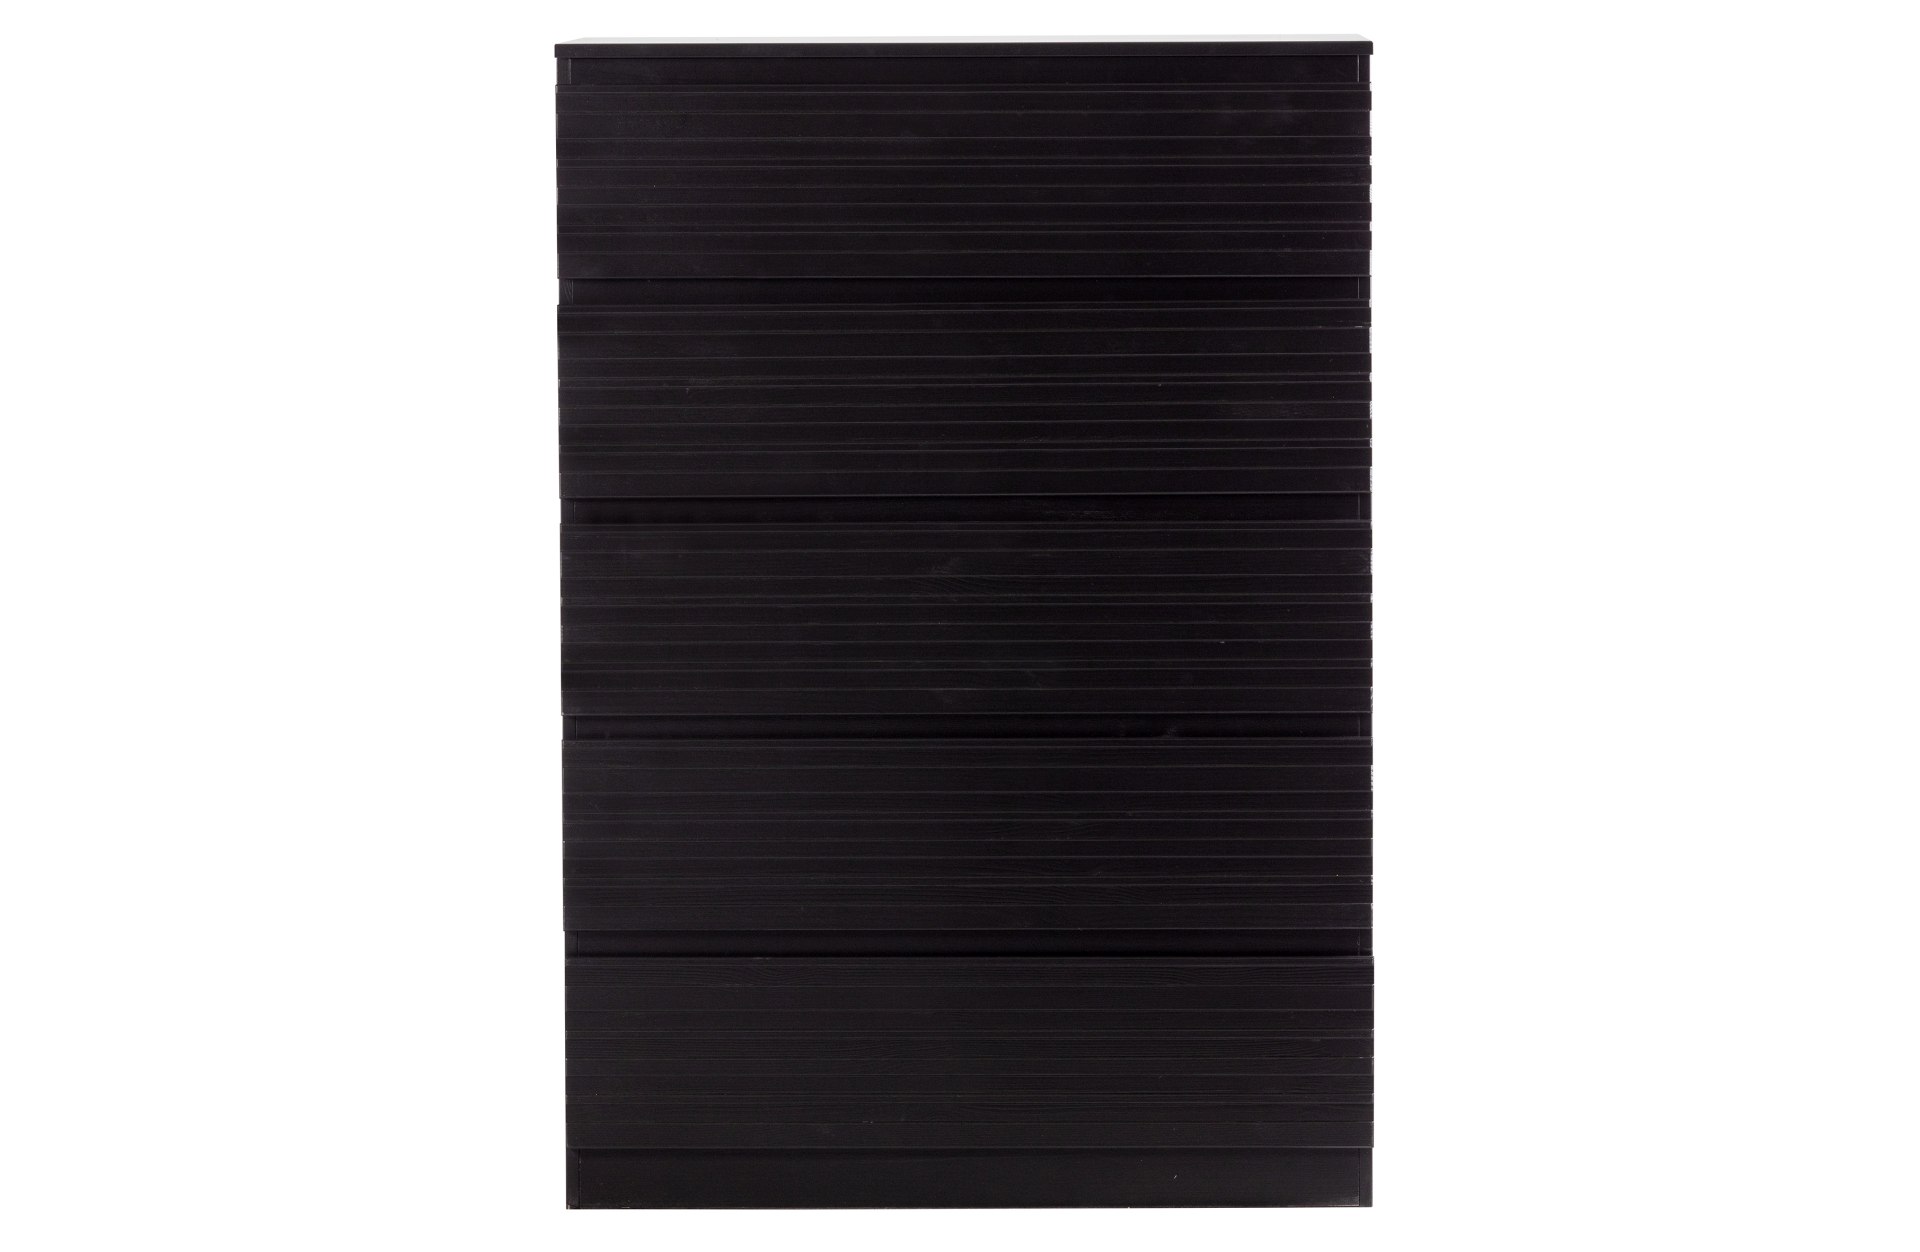 Die Kommode Jente wurde aus Kiefernholz hergestellt, welches einen schwarzen Farbton besitzt. Die Kommode ist in zwei Varianten verfügbar, diese hat 5 Schubladen.